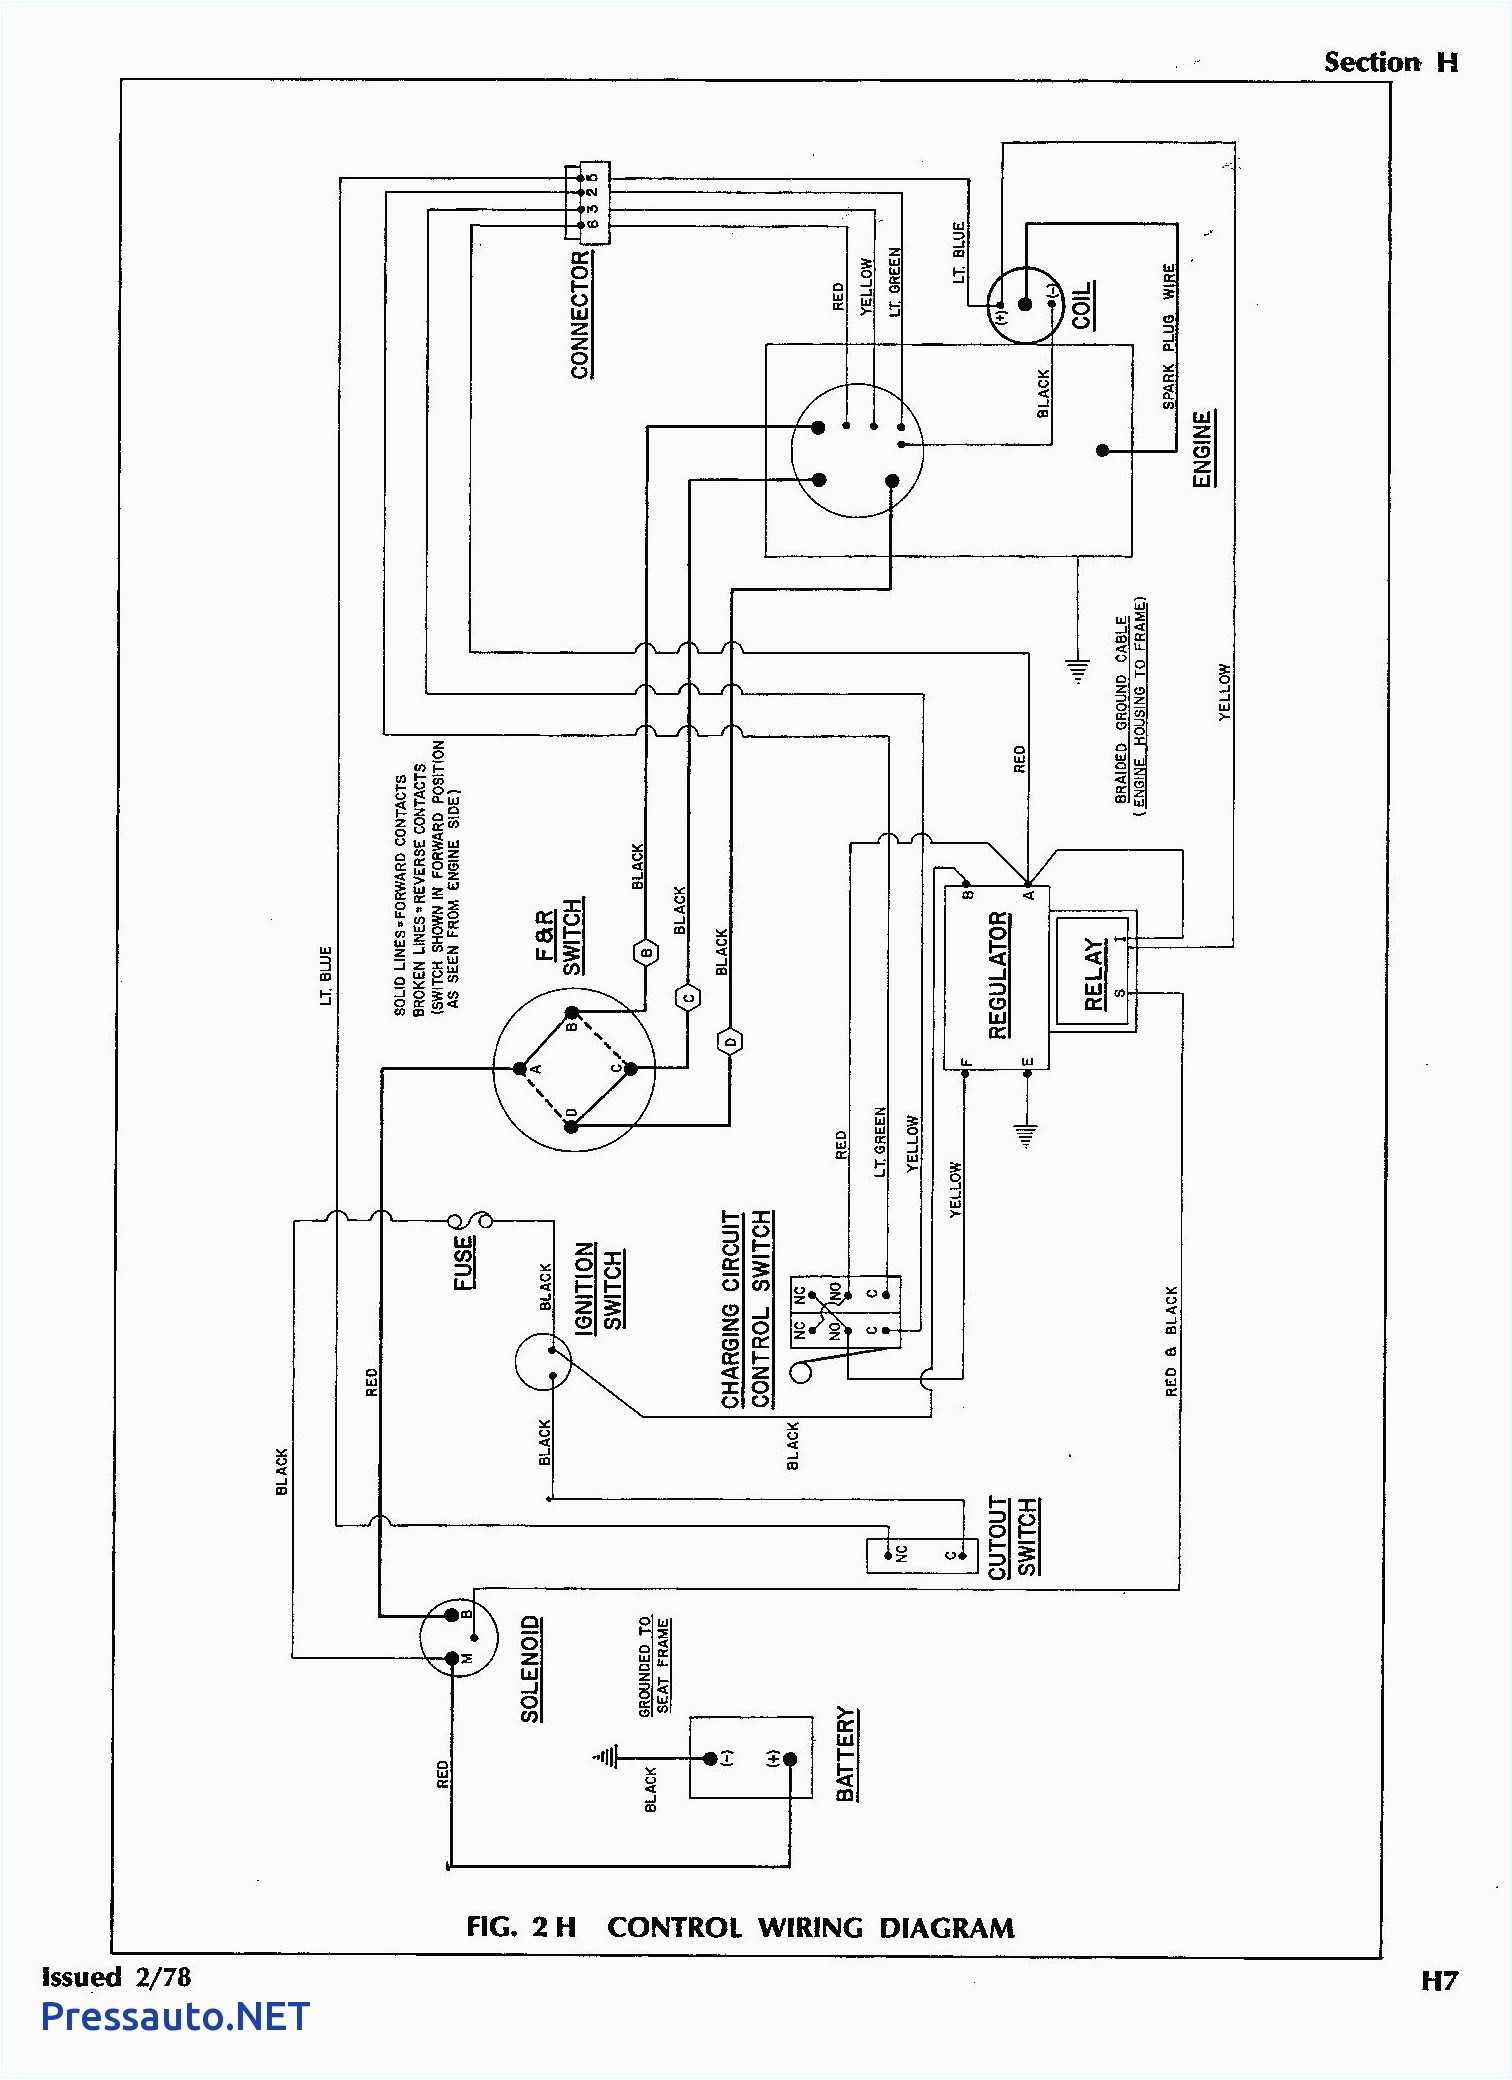 wiring diagram for ez go workhorse st480 wiring diagram sheet ez go st480 wiring diagram ezgo